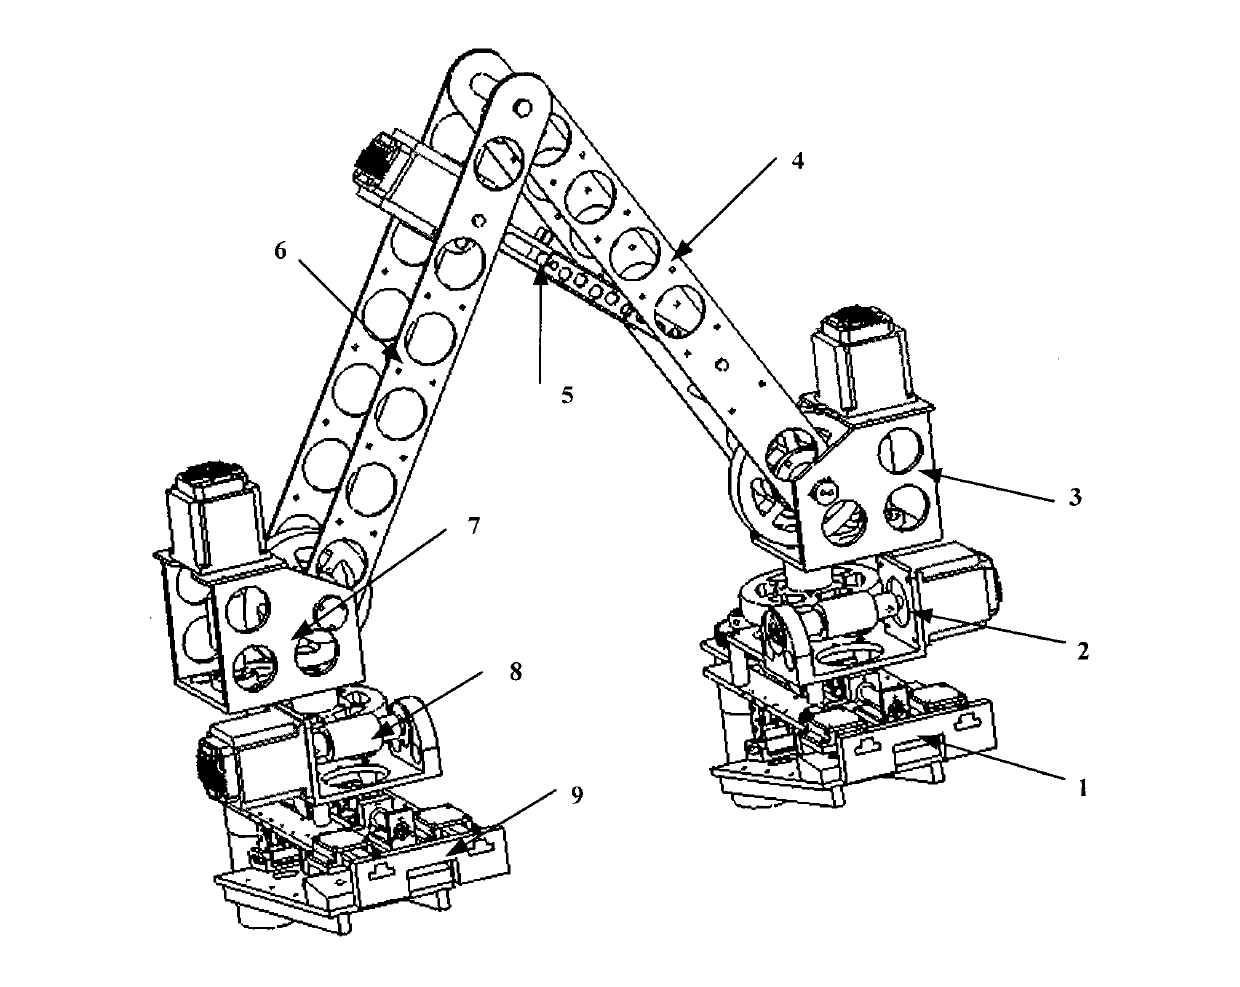 Iron tower climbing articulated robot